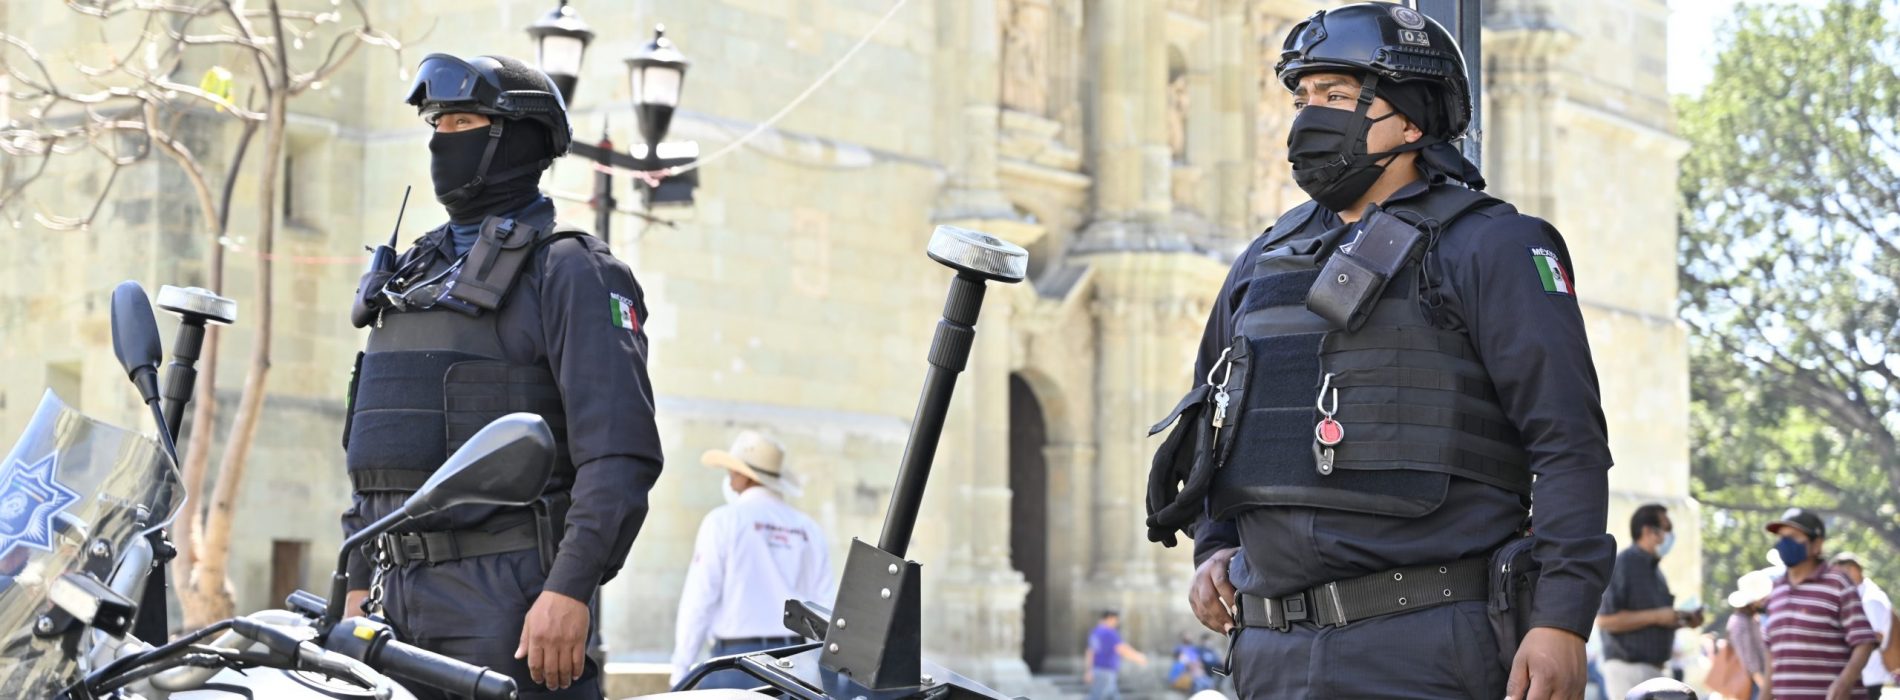 Presenta Ayuntamiento de Oaxaca al sector hotelero la estrategia “Mi hotel seguro”